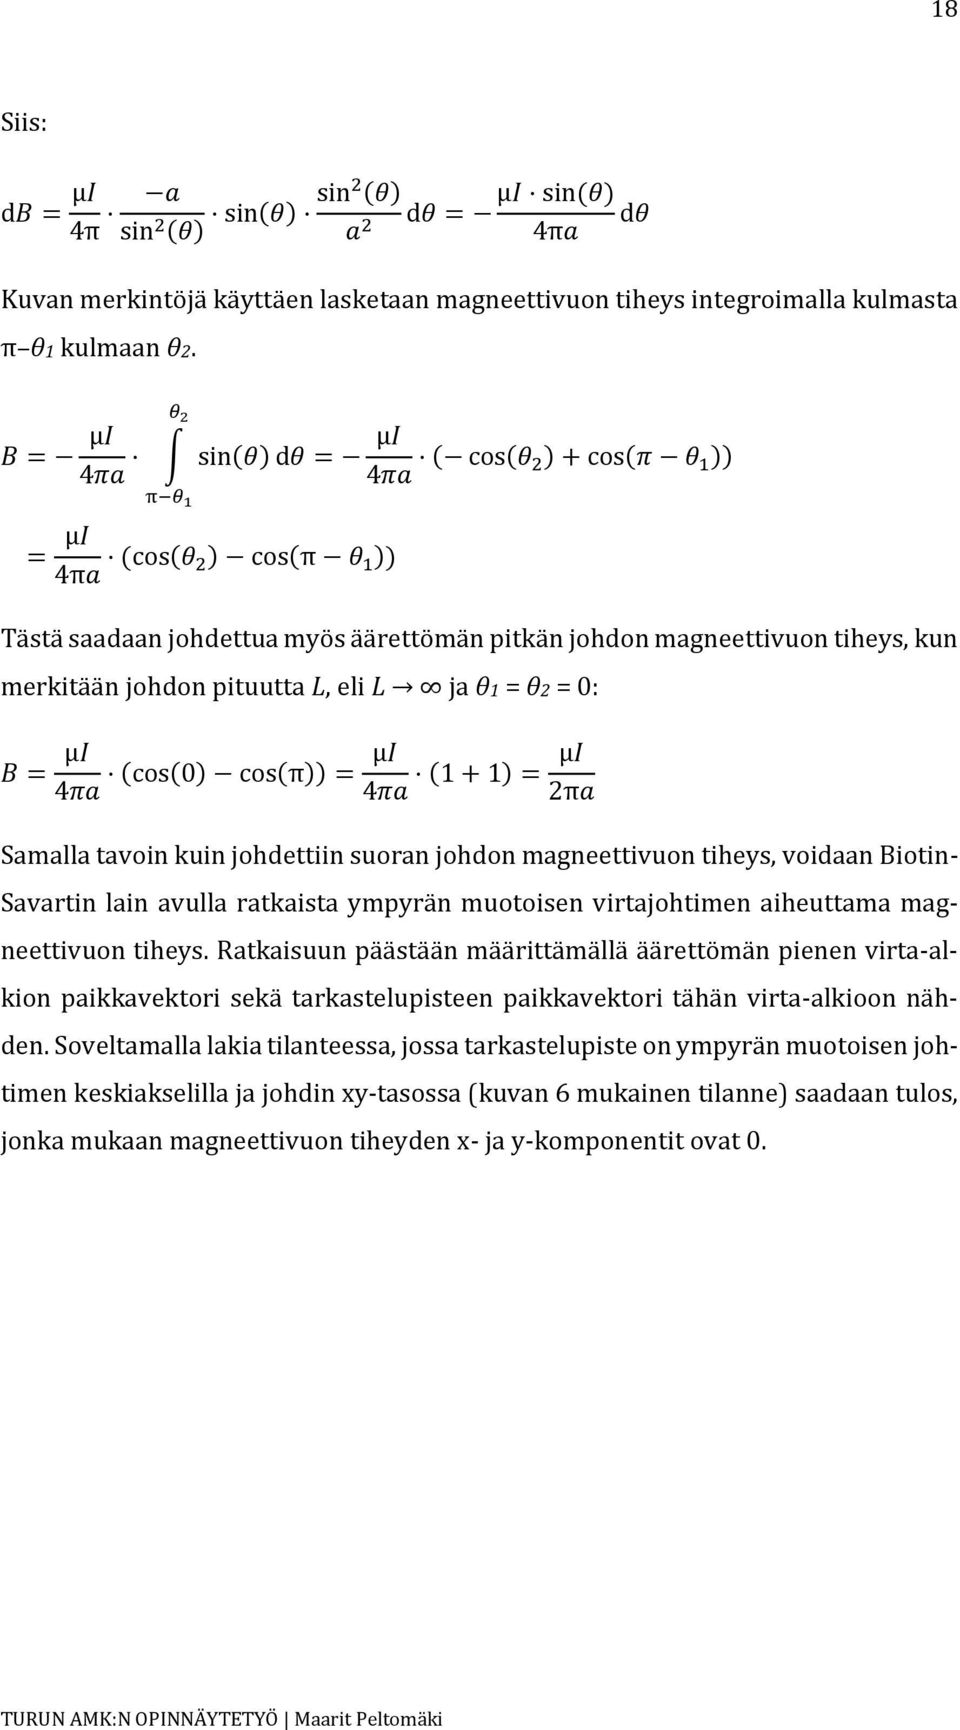 4 (cos(0) cos(π)) = μ 4 (1 + 1) = μ 2π Samalla tavoin kuin johdettiin suoran johdon magneettivuon tiheys, voidaan Biotin- Savartin lain avulla ratkaista ympyrän muotoisen virtajohtimen aiheuttama